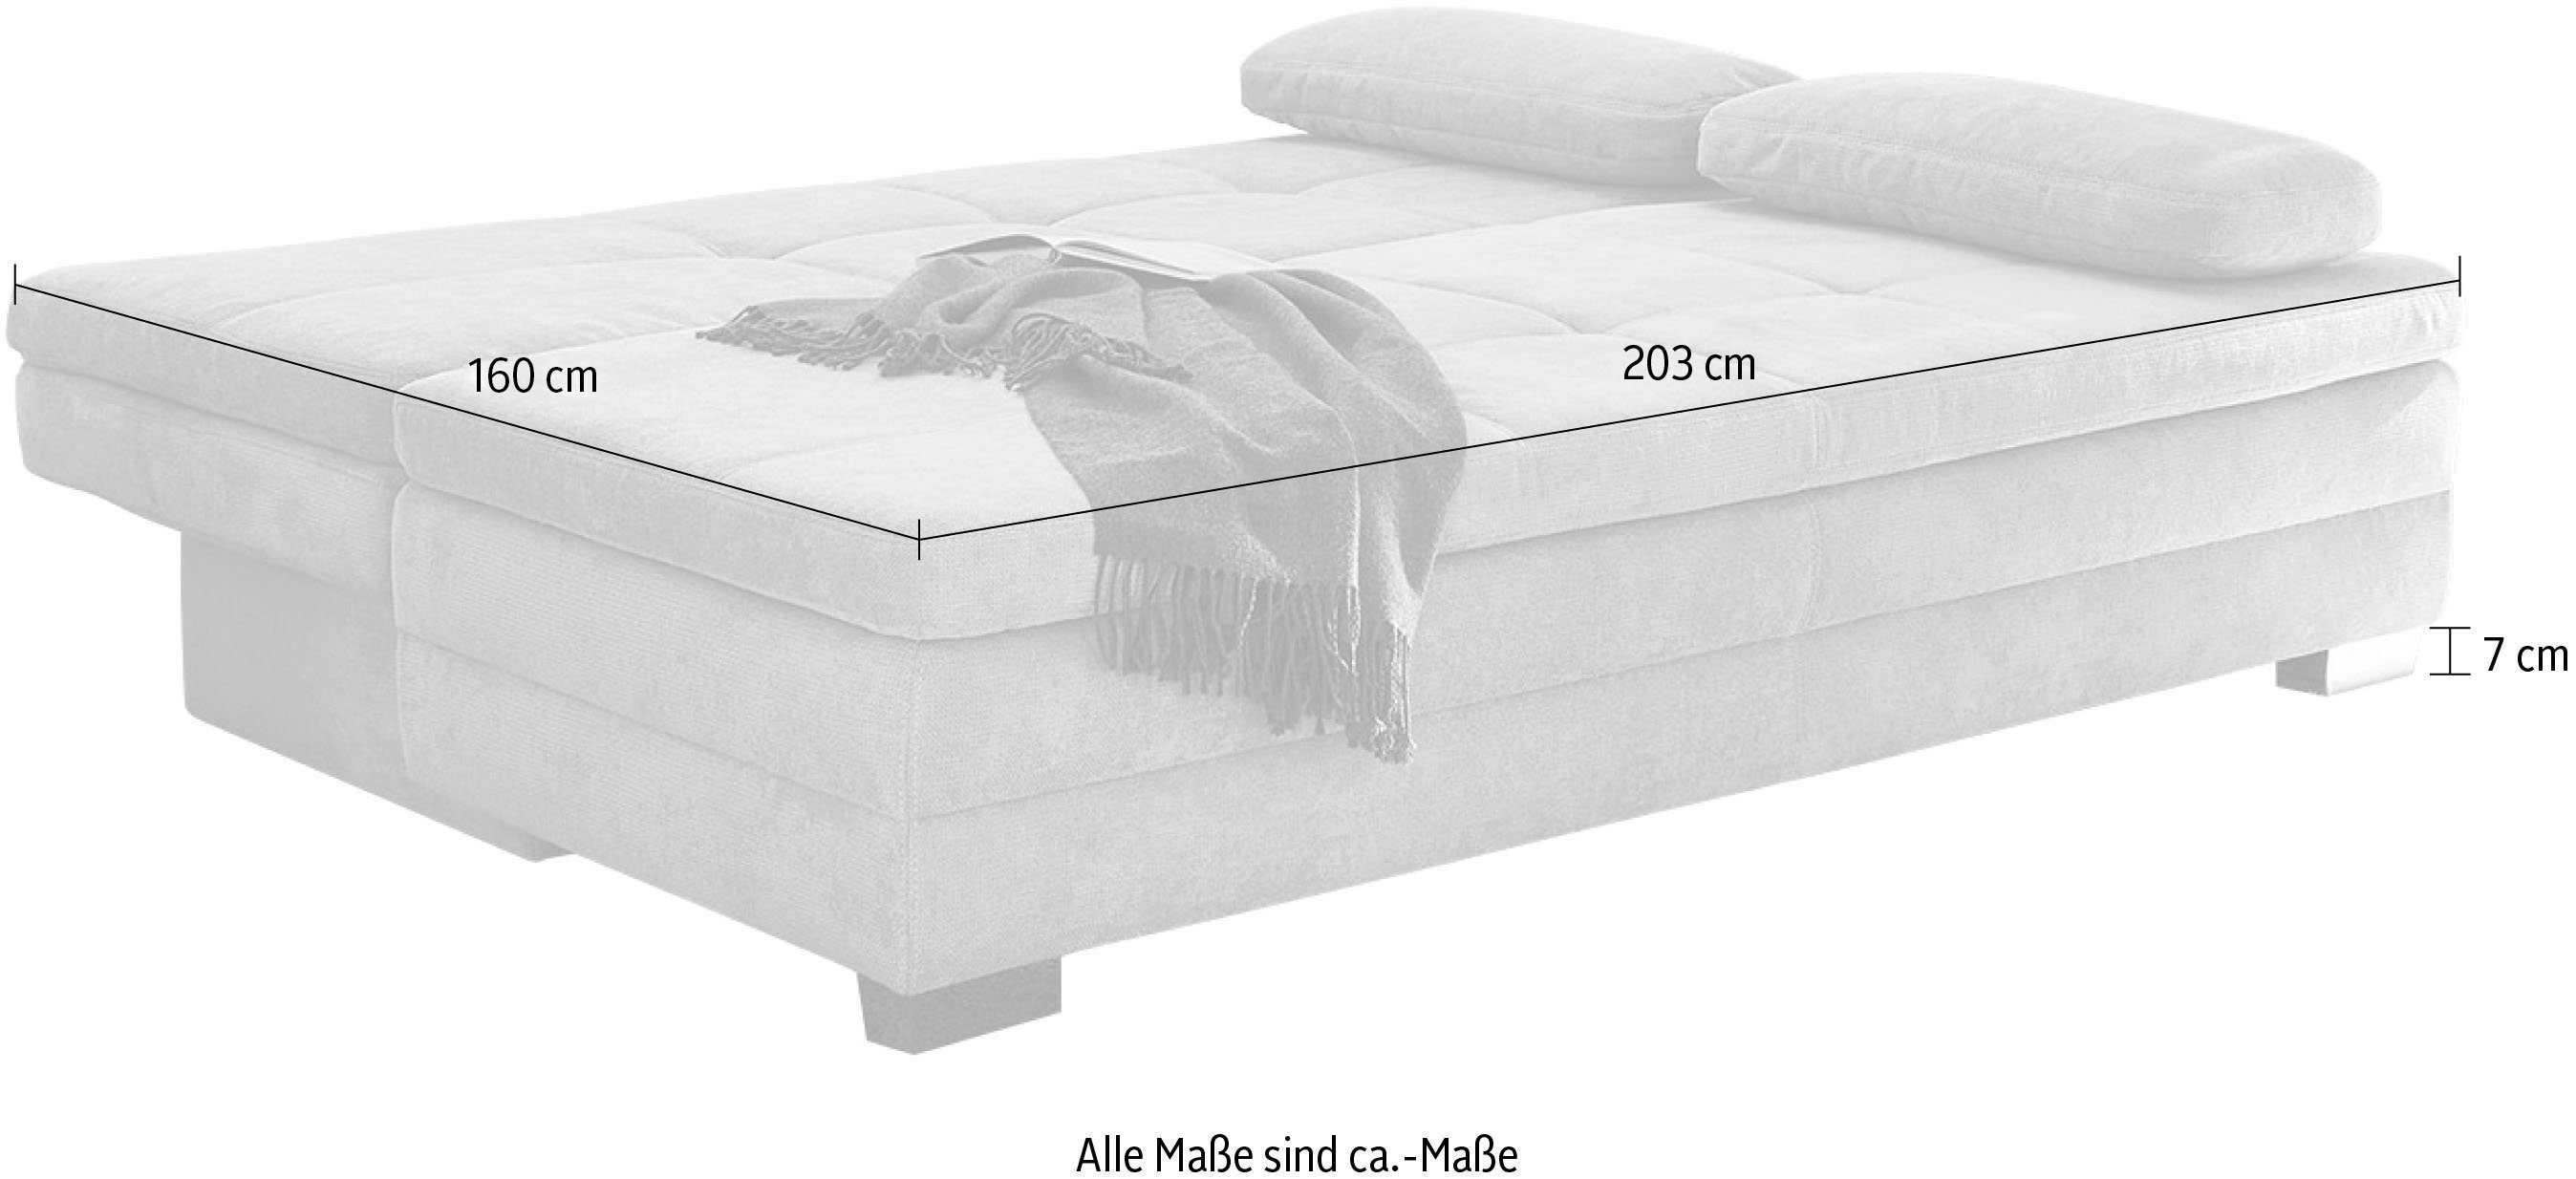 Bettfunktion Jockenhöfer mit Dauerschläfer und Bettkasten, Lincoln, Schlafsofa Gruppe geeignet als aqua